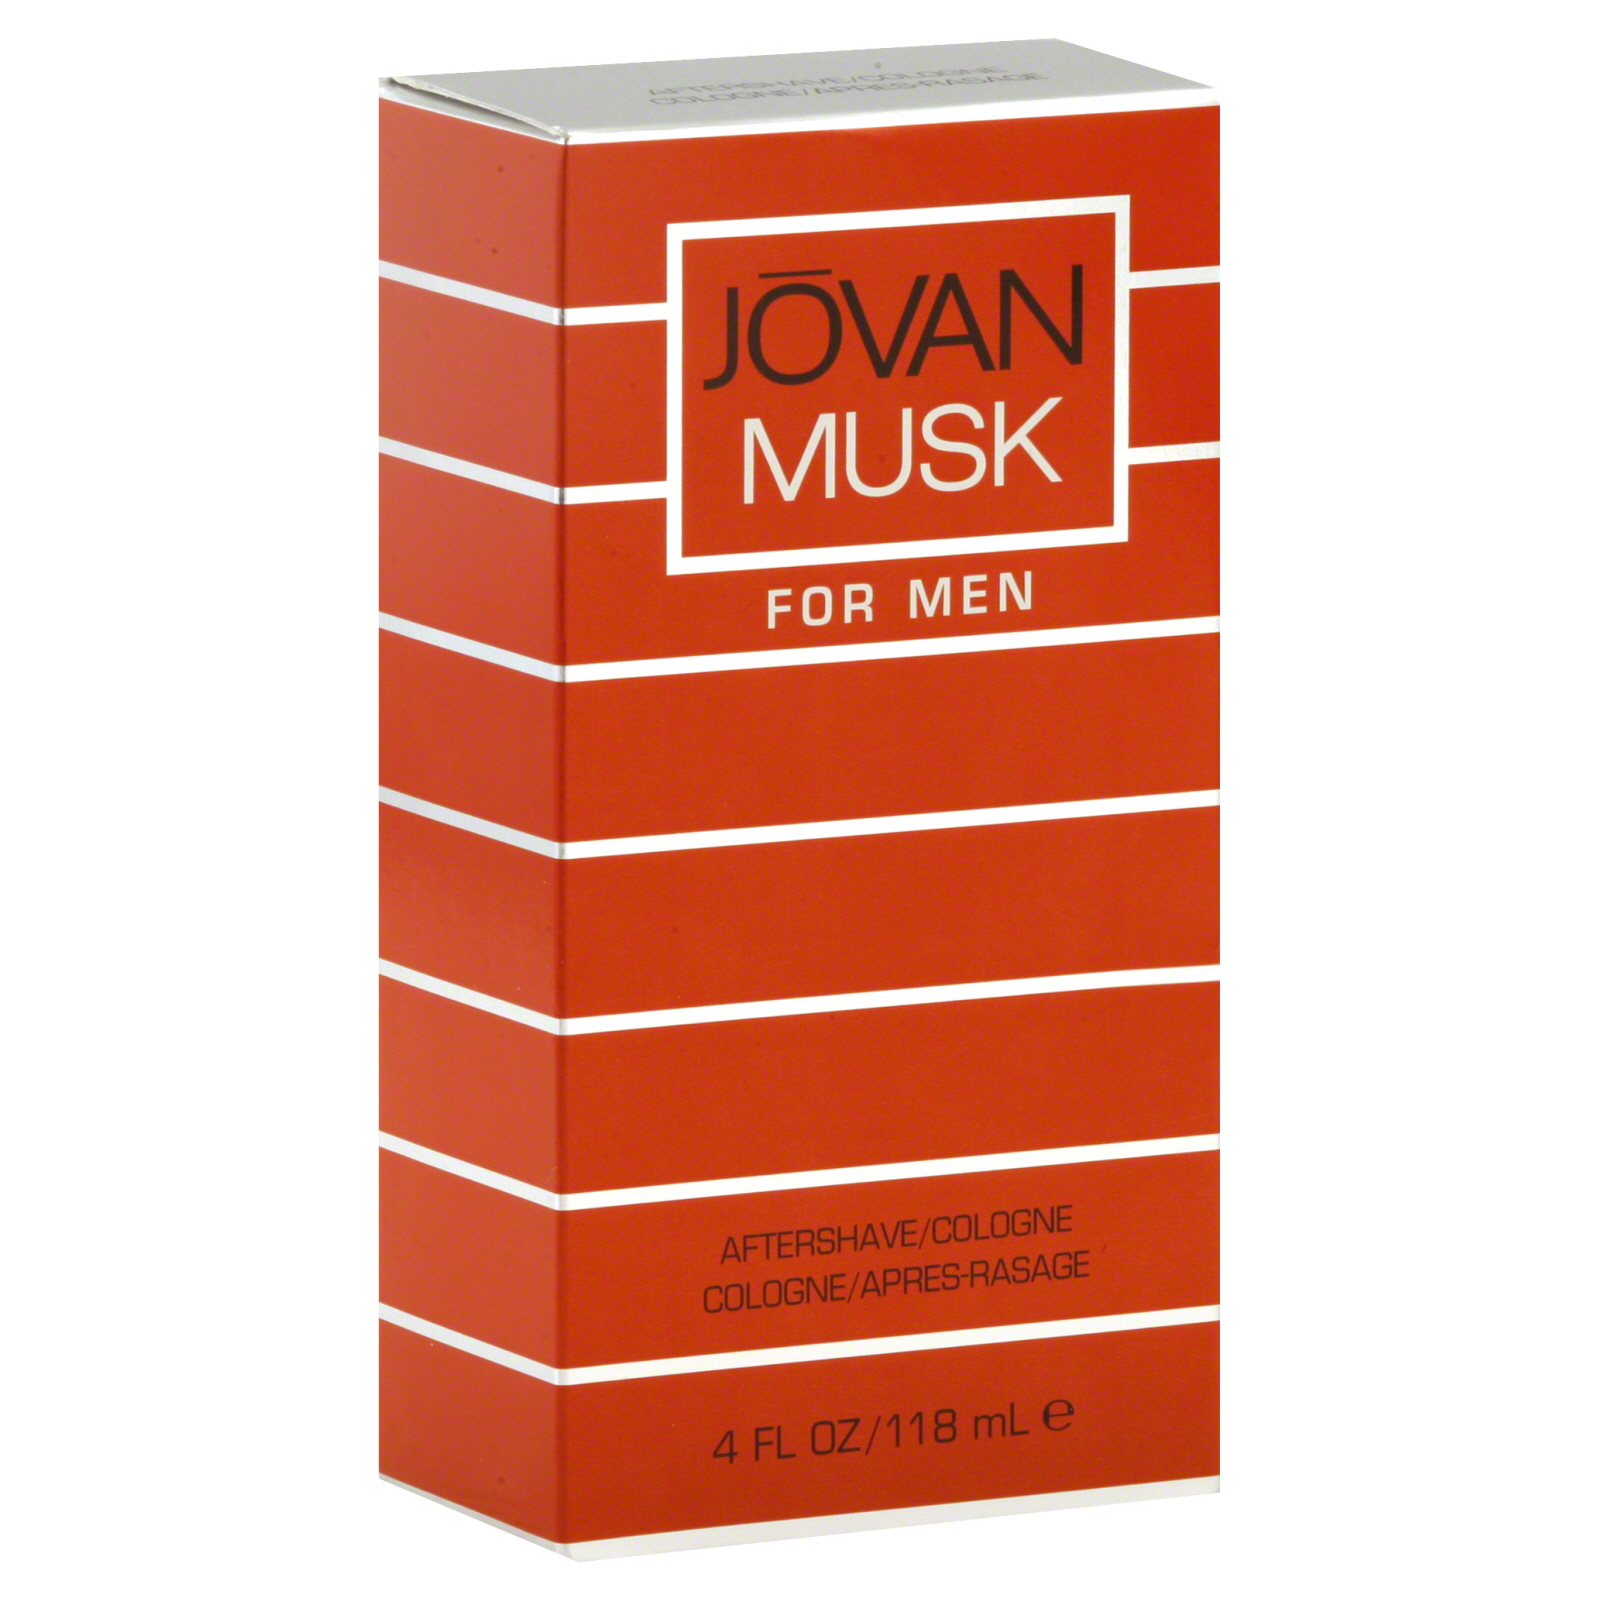 Jovan Musk Aftershave/Cologne for Men, 4 fl oz (118 ml)